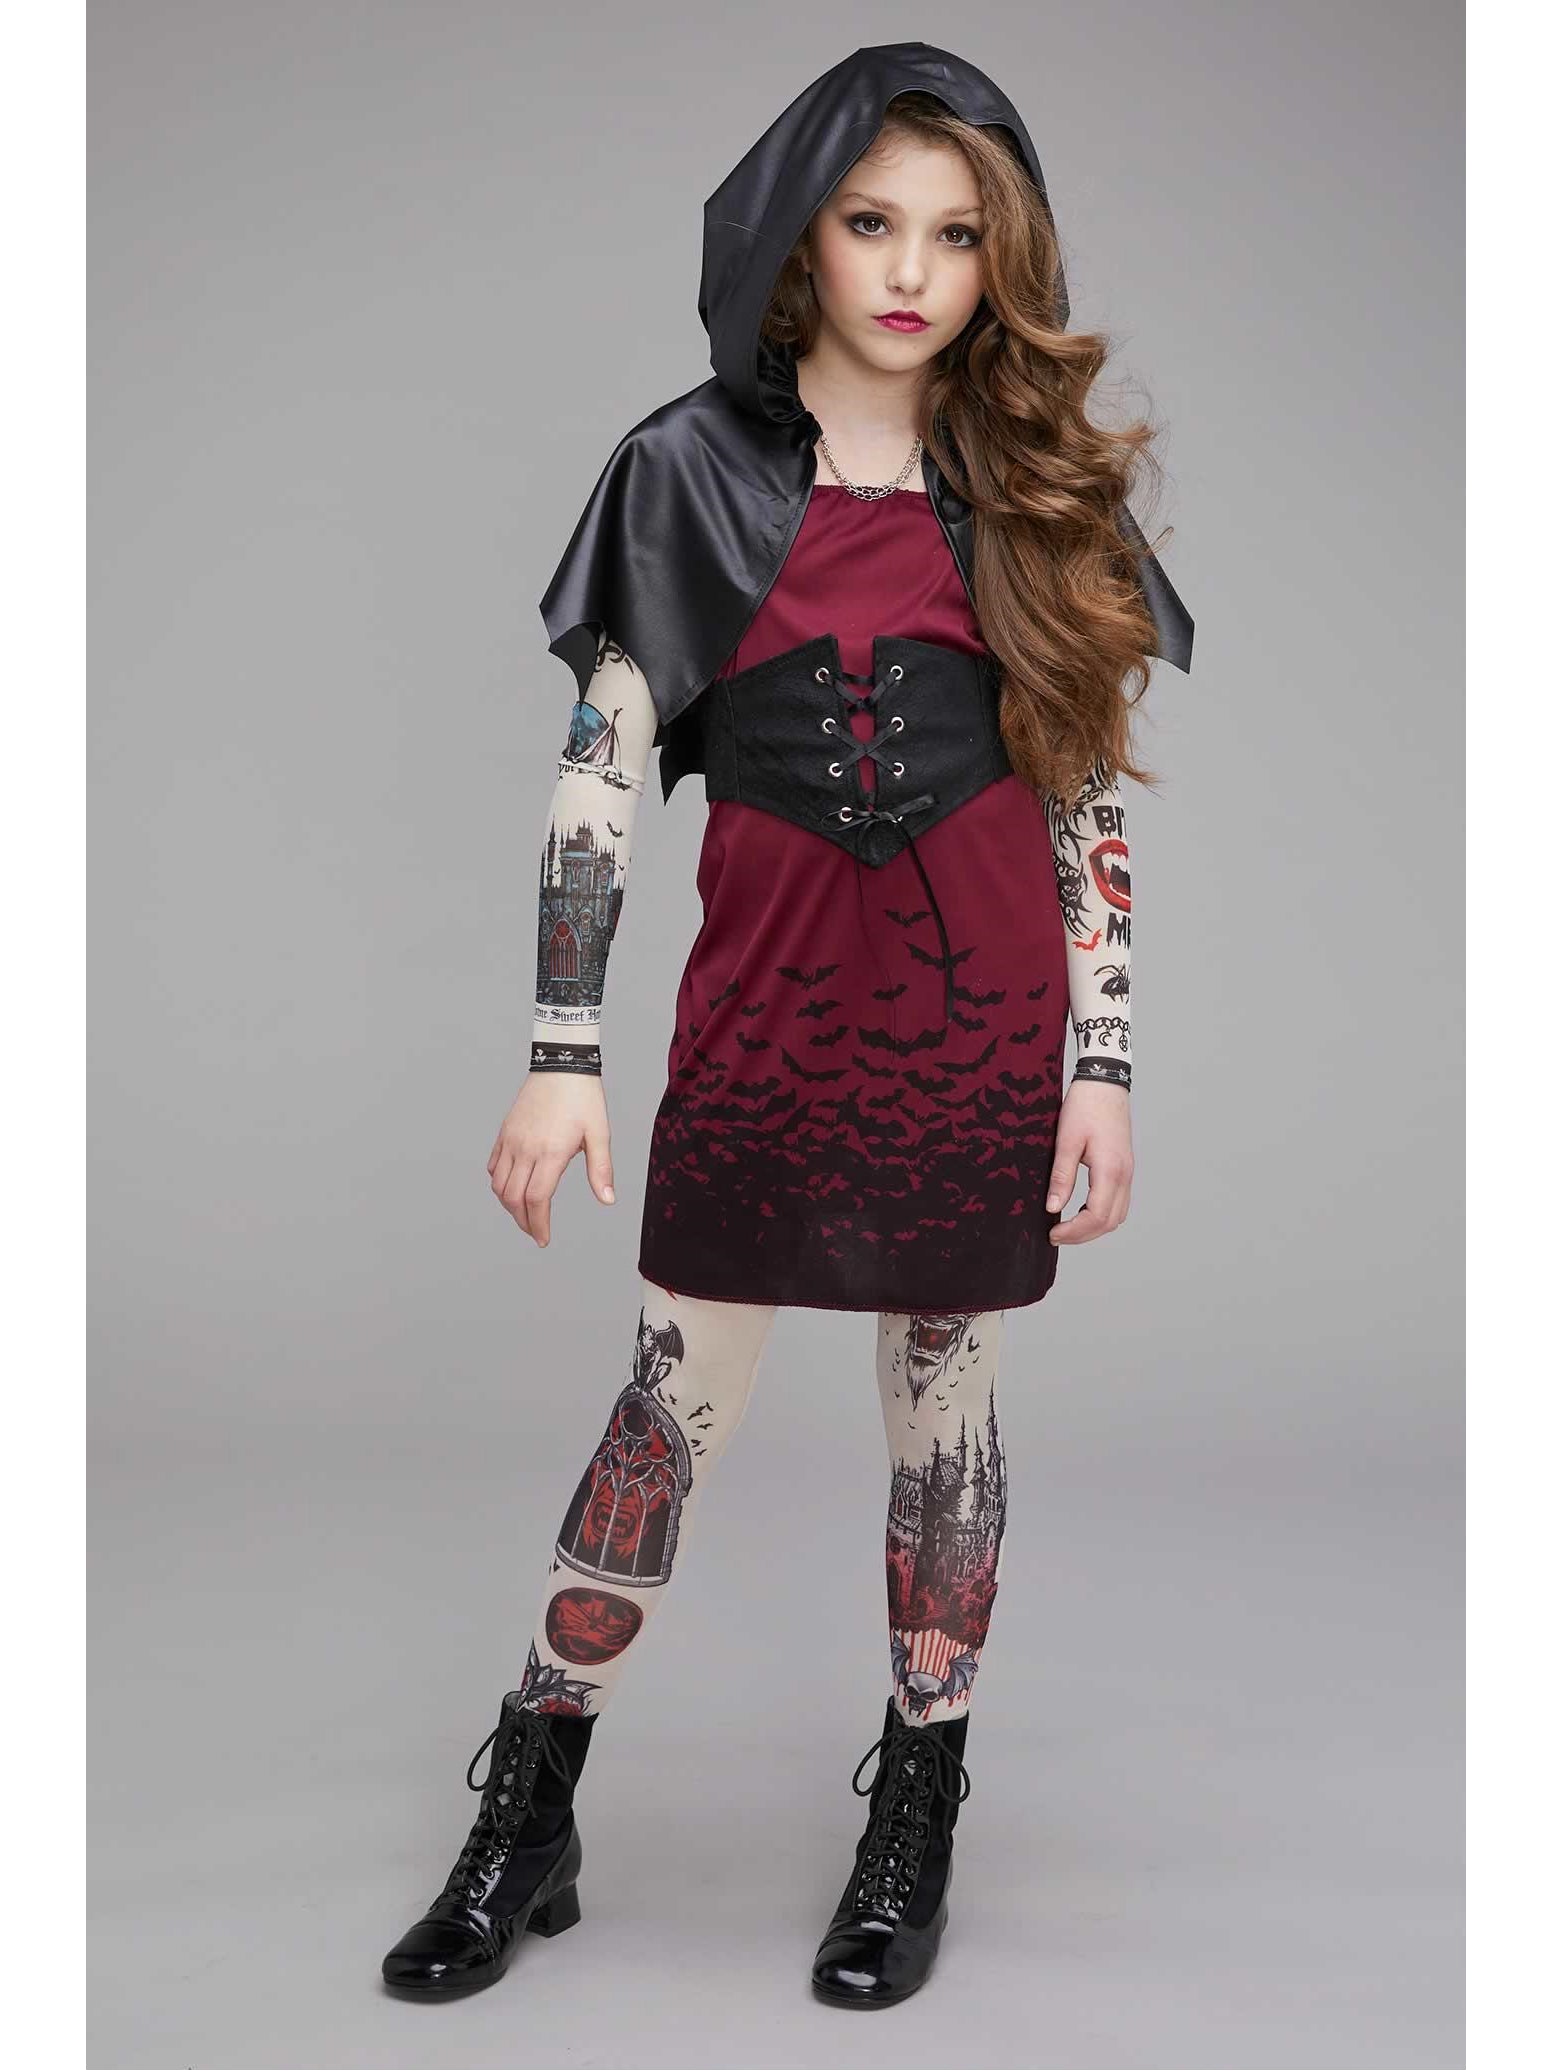 Girls' Costumes Incharacter Street Vamp Vampire Tattooed Tween Girls ...